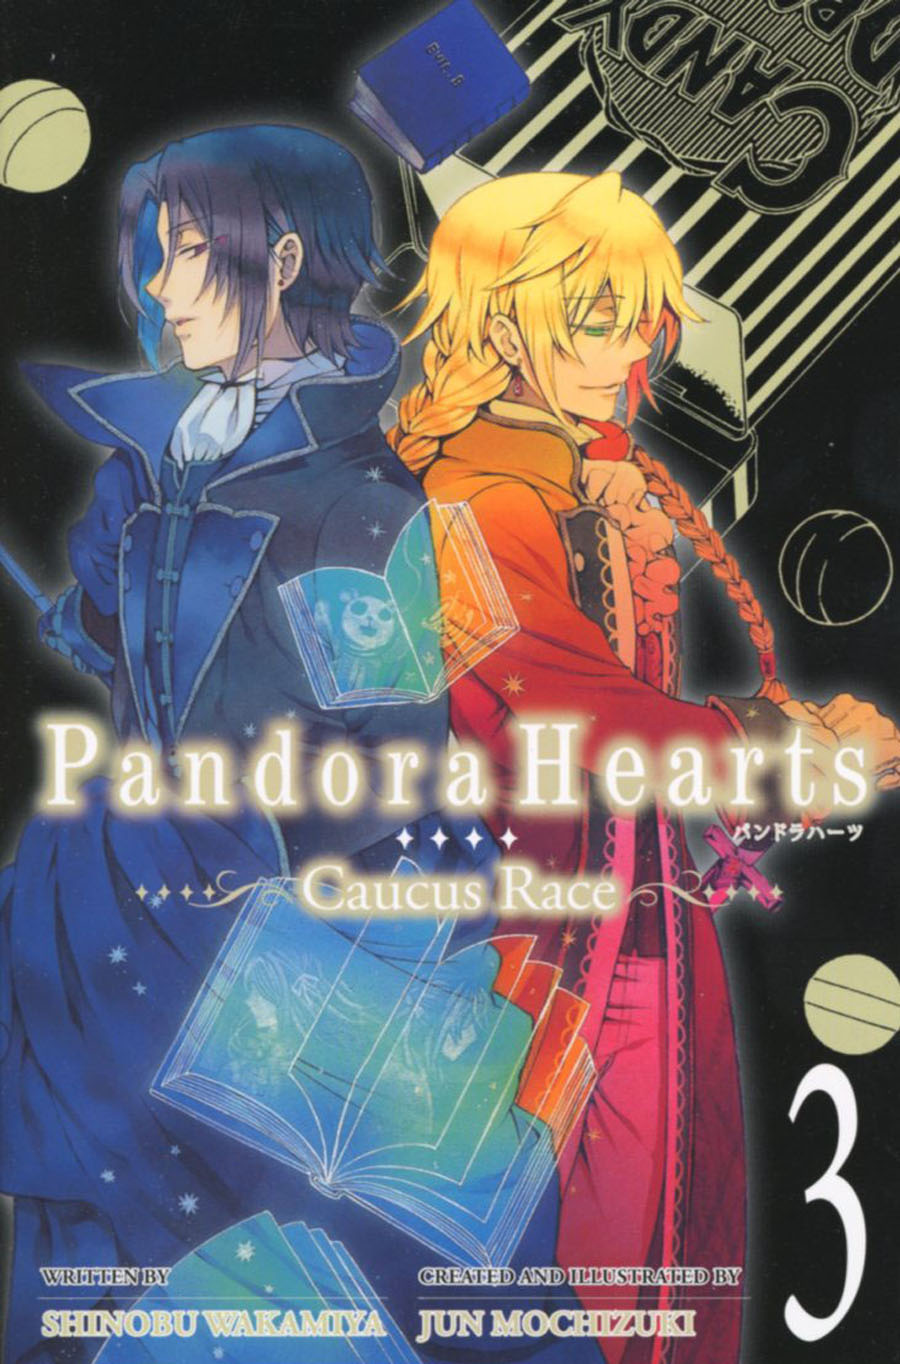 Pandora Hearts Caucus Race Novel Vol 3